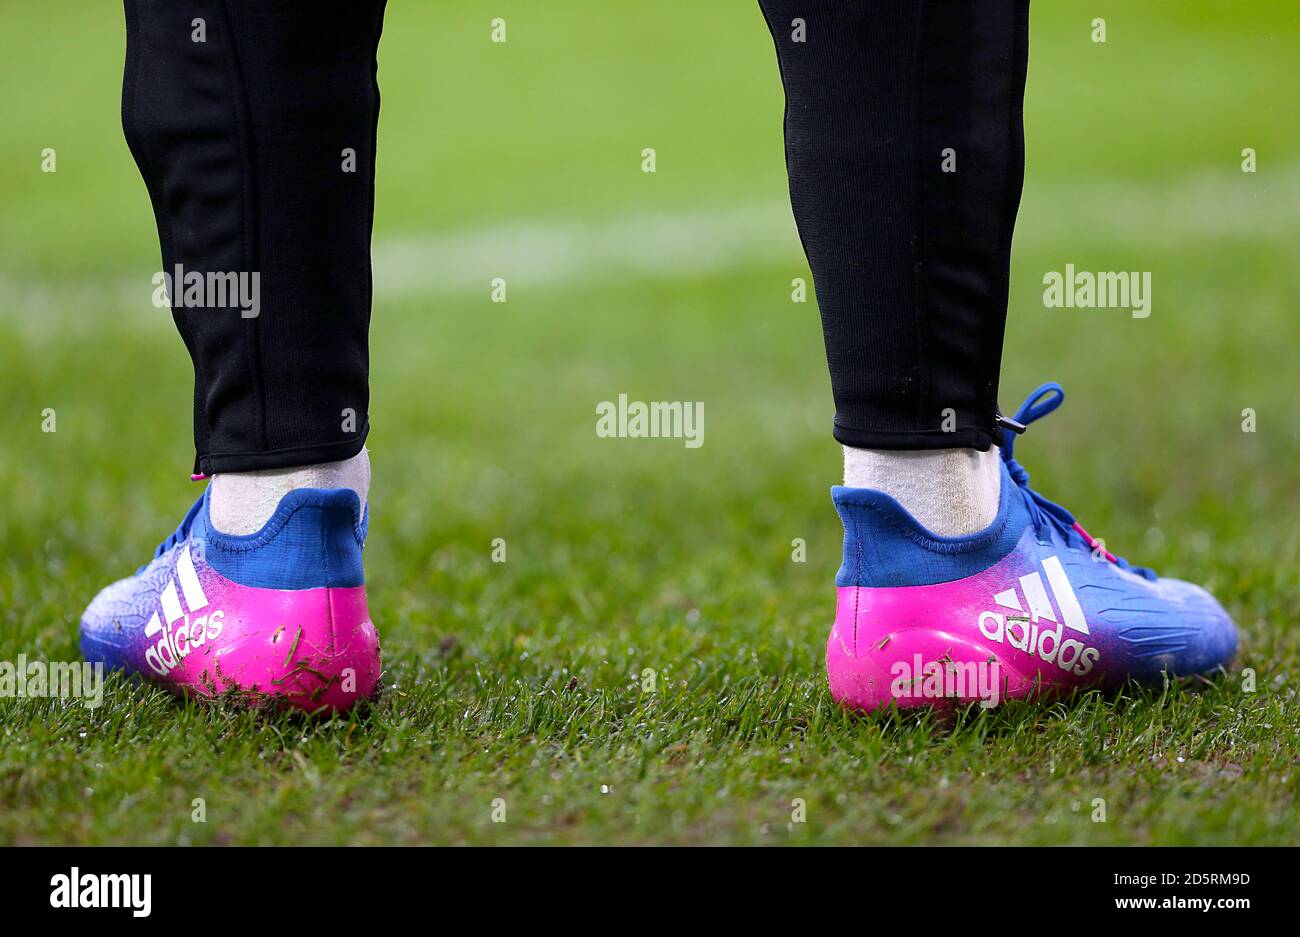 Detalle de las botas de fútbol Adidas Fotografía de stock - Alamy